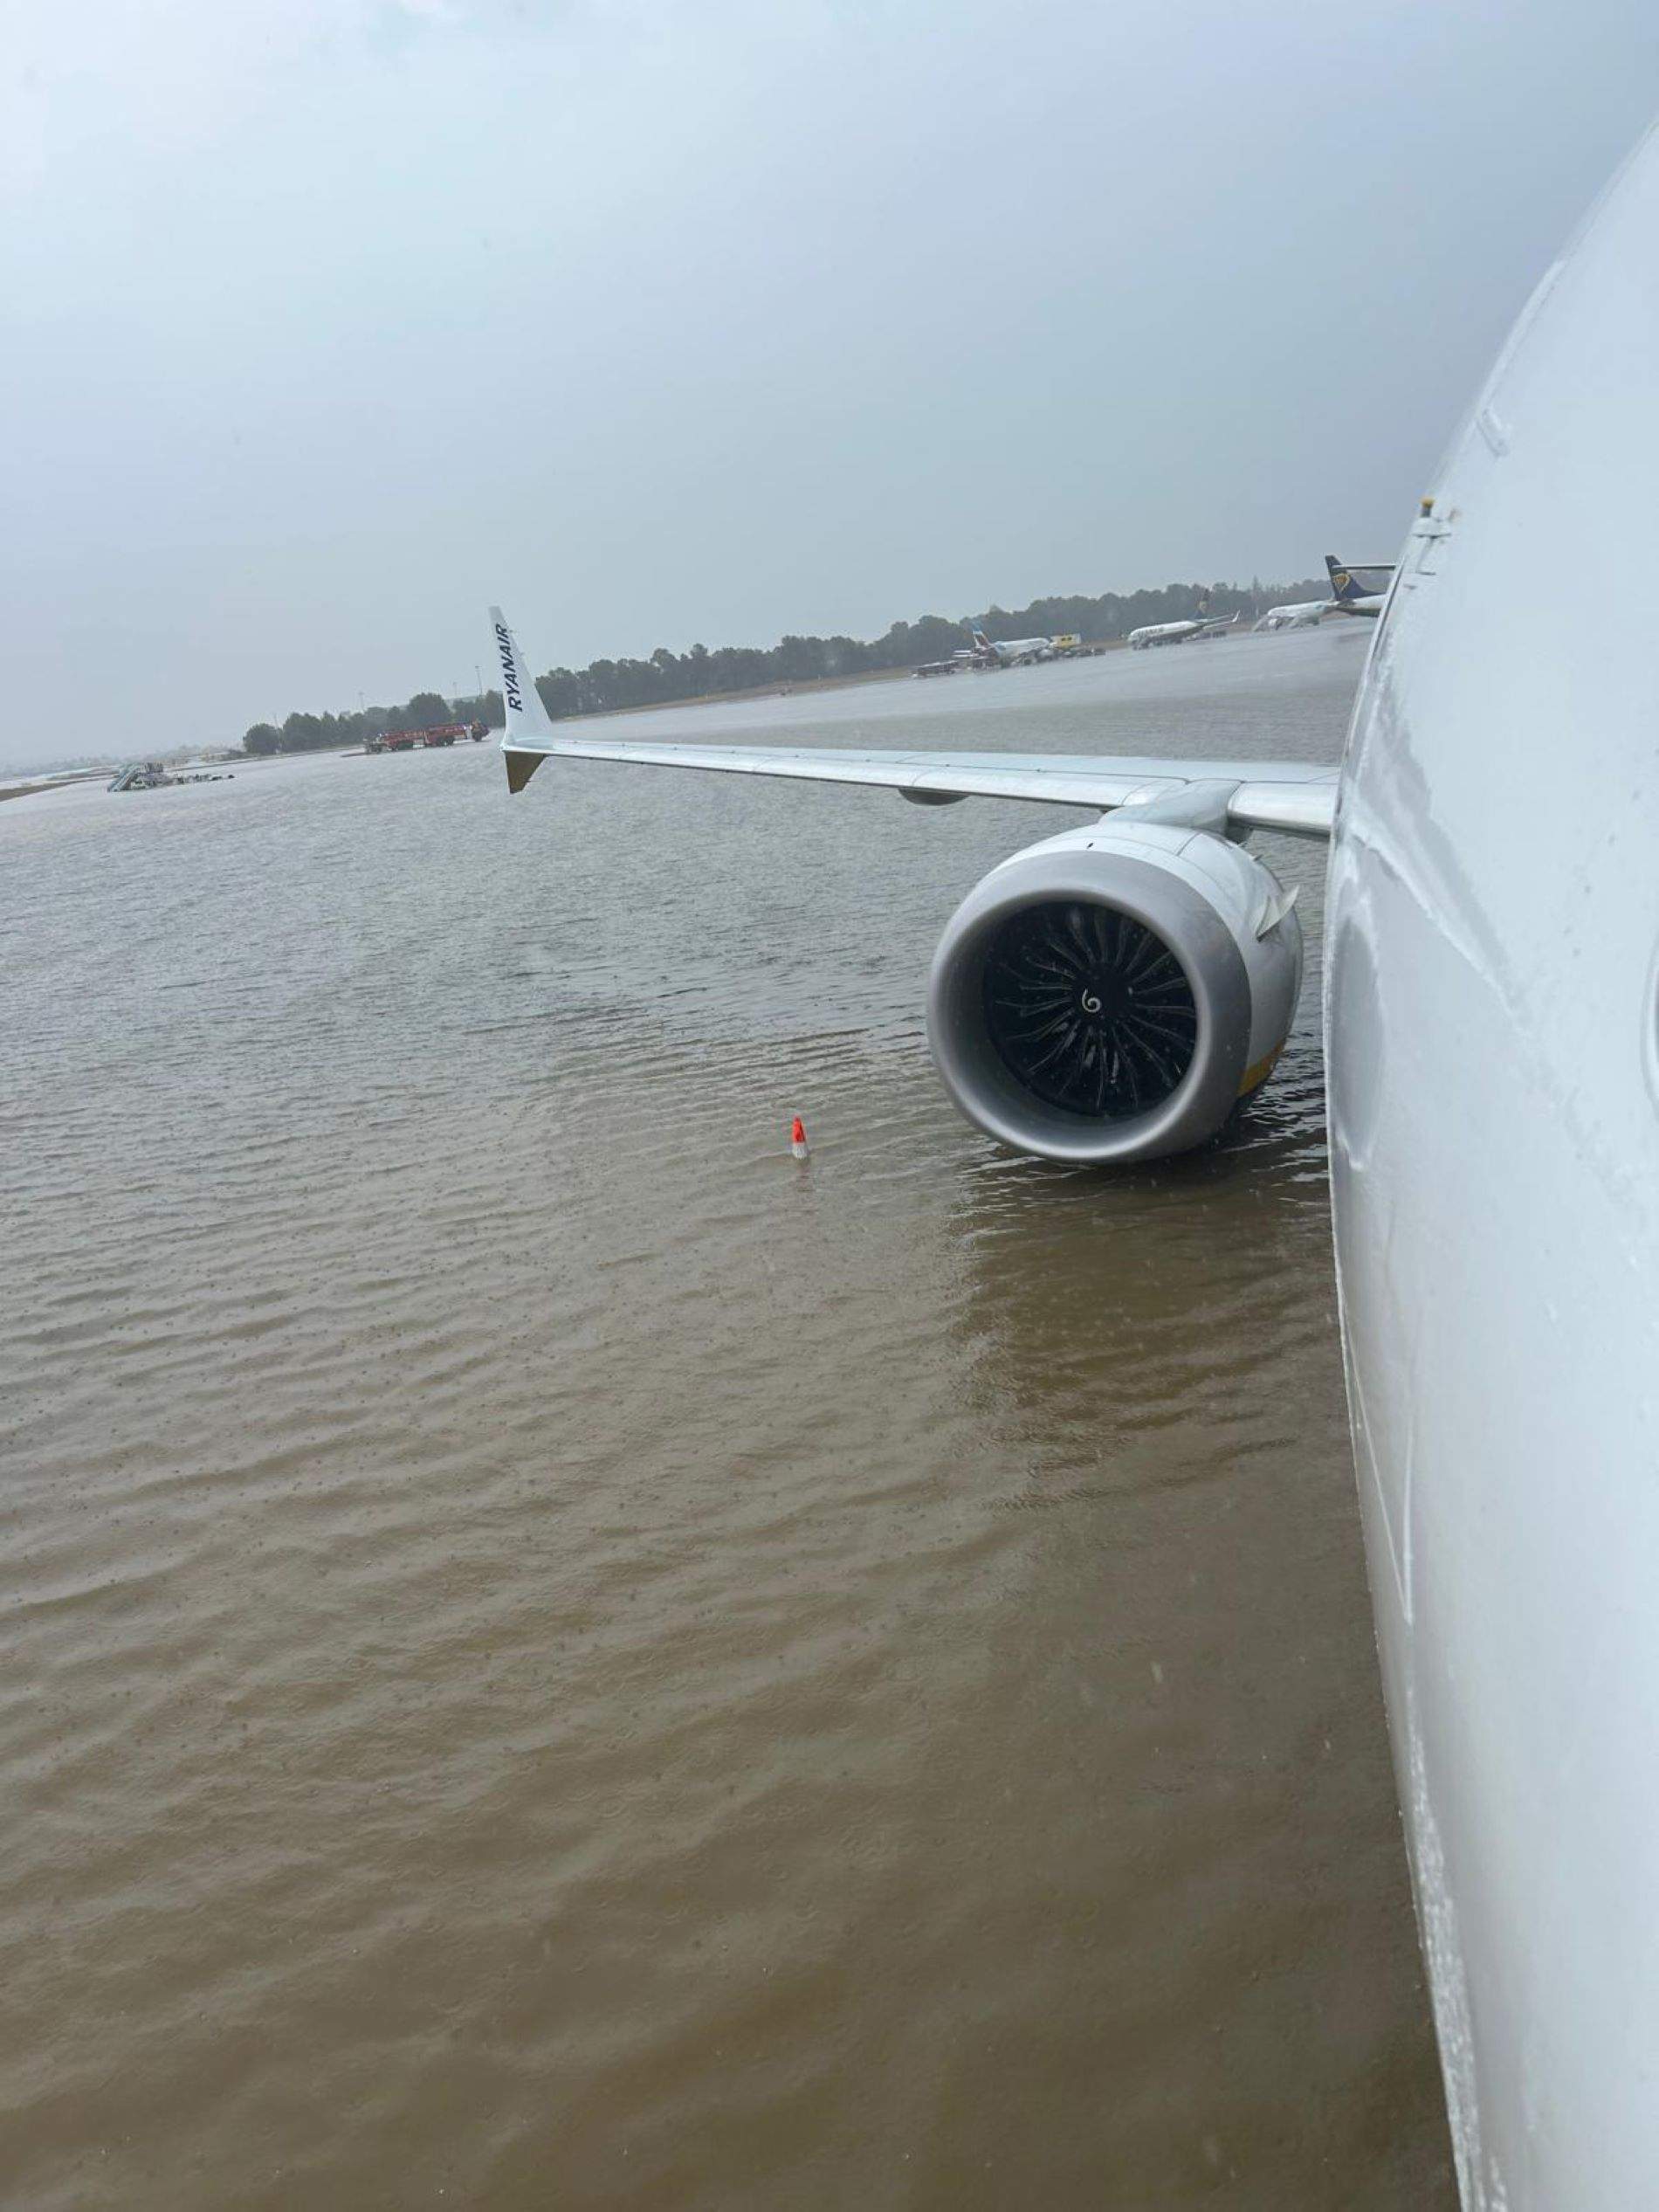 Caos en el aeropuerto de Palma por fuertes aguaceros: inundaciones, vuelos cancelados y pasajeros retenidos